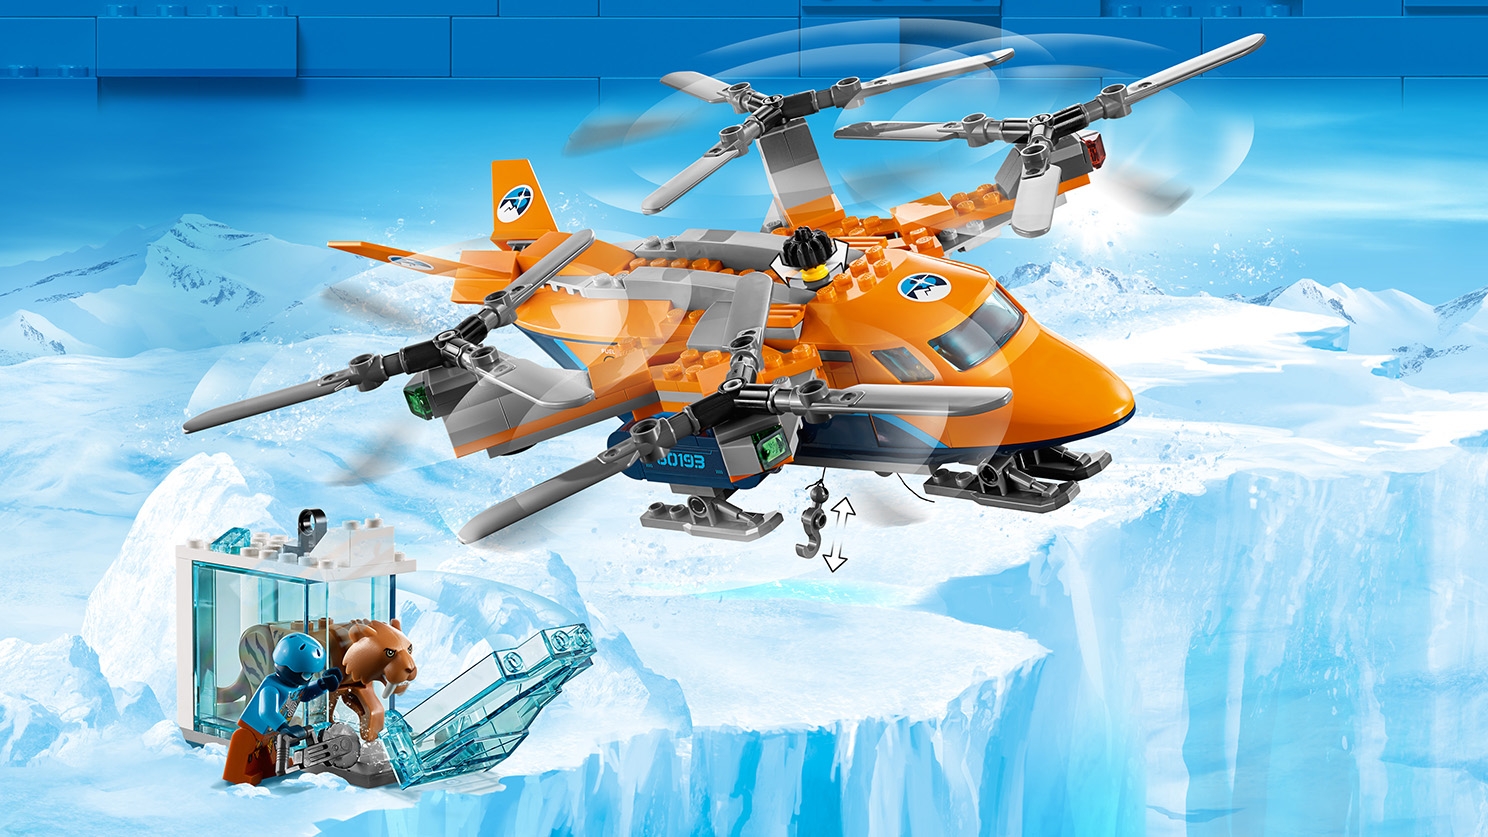 Transporte aéreo del Ártico de la ciudad LEGO 60193 